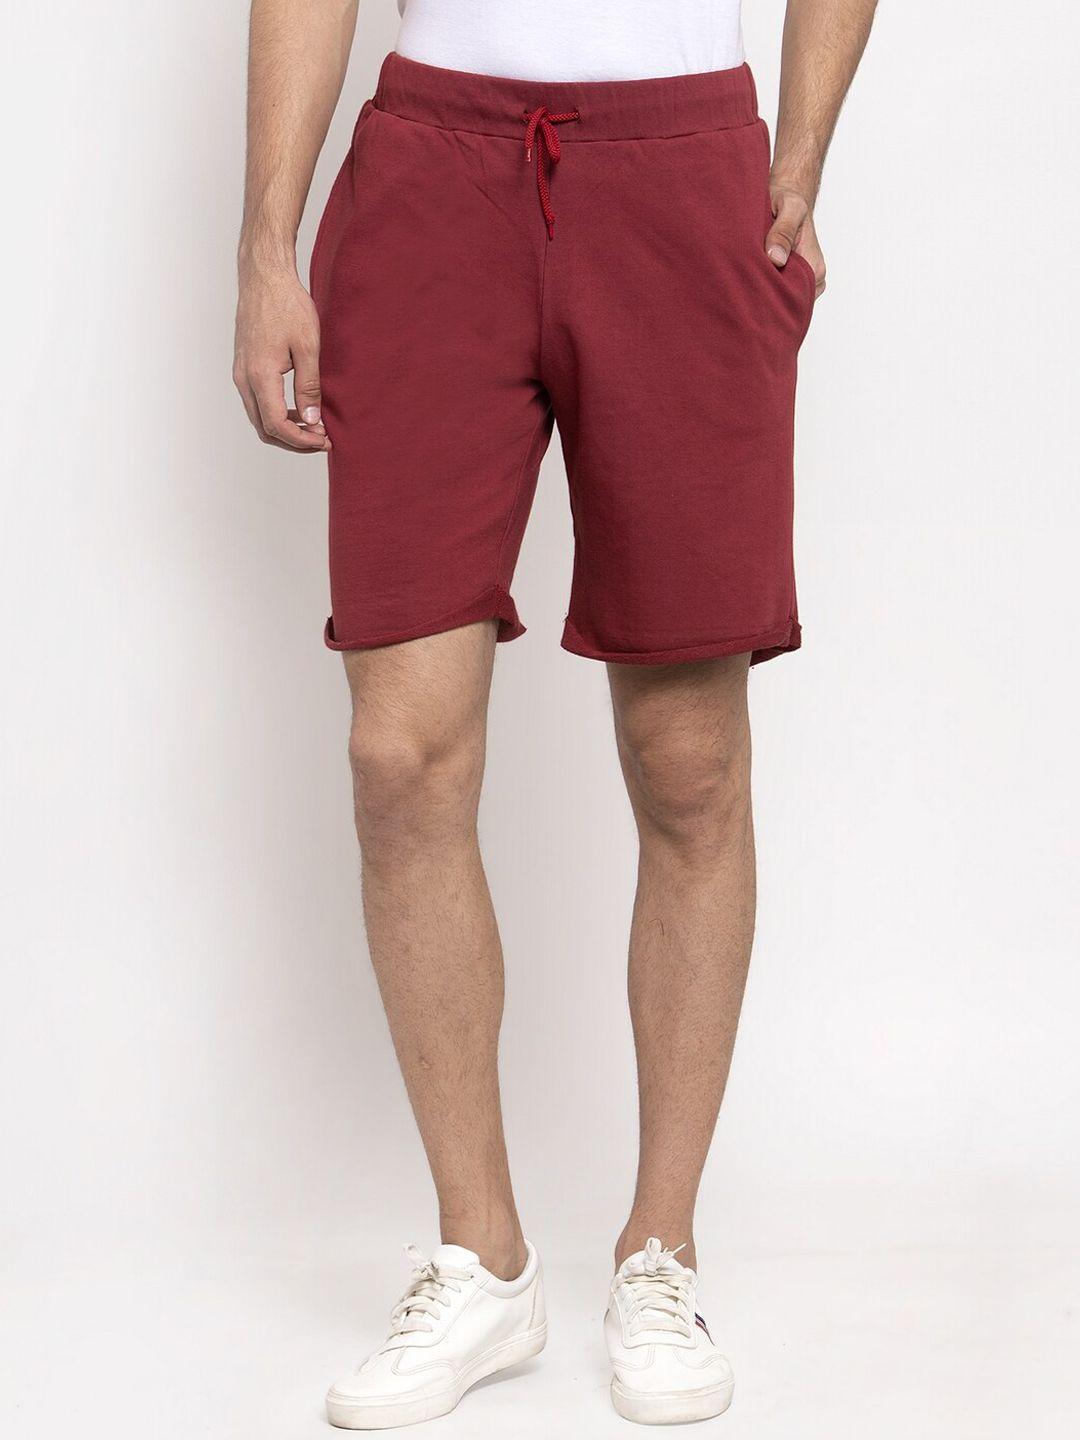 door74-men-maroon-cotton-shorts